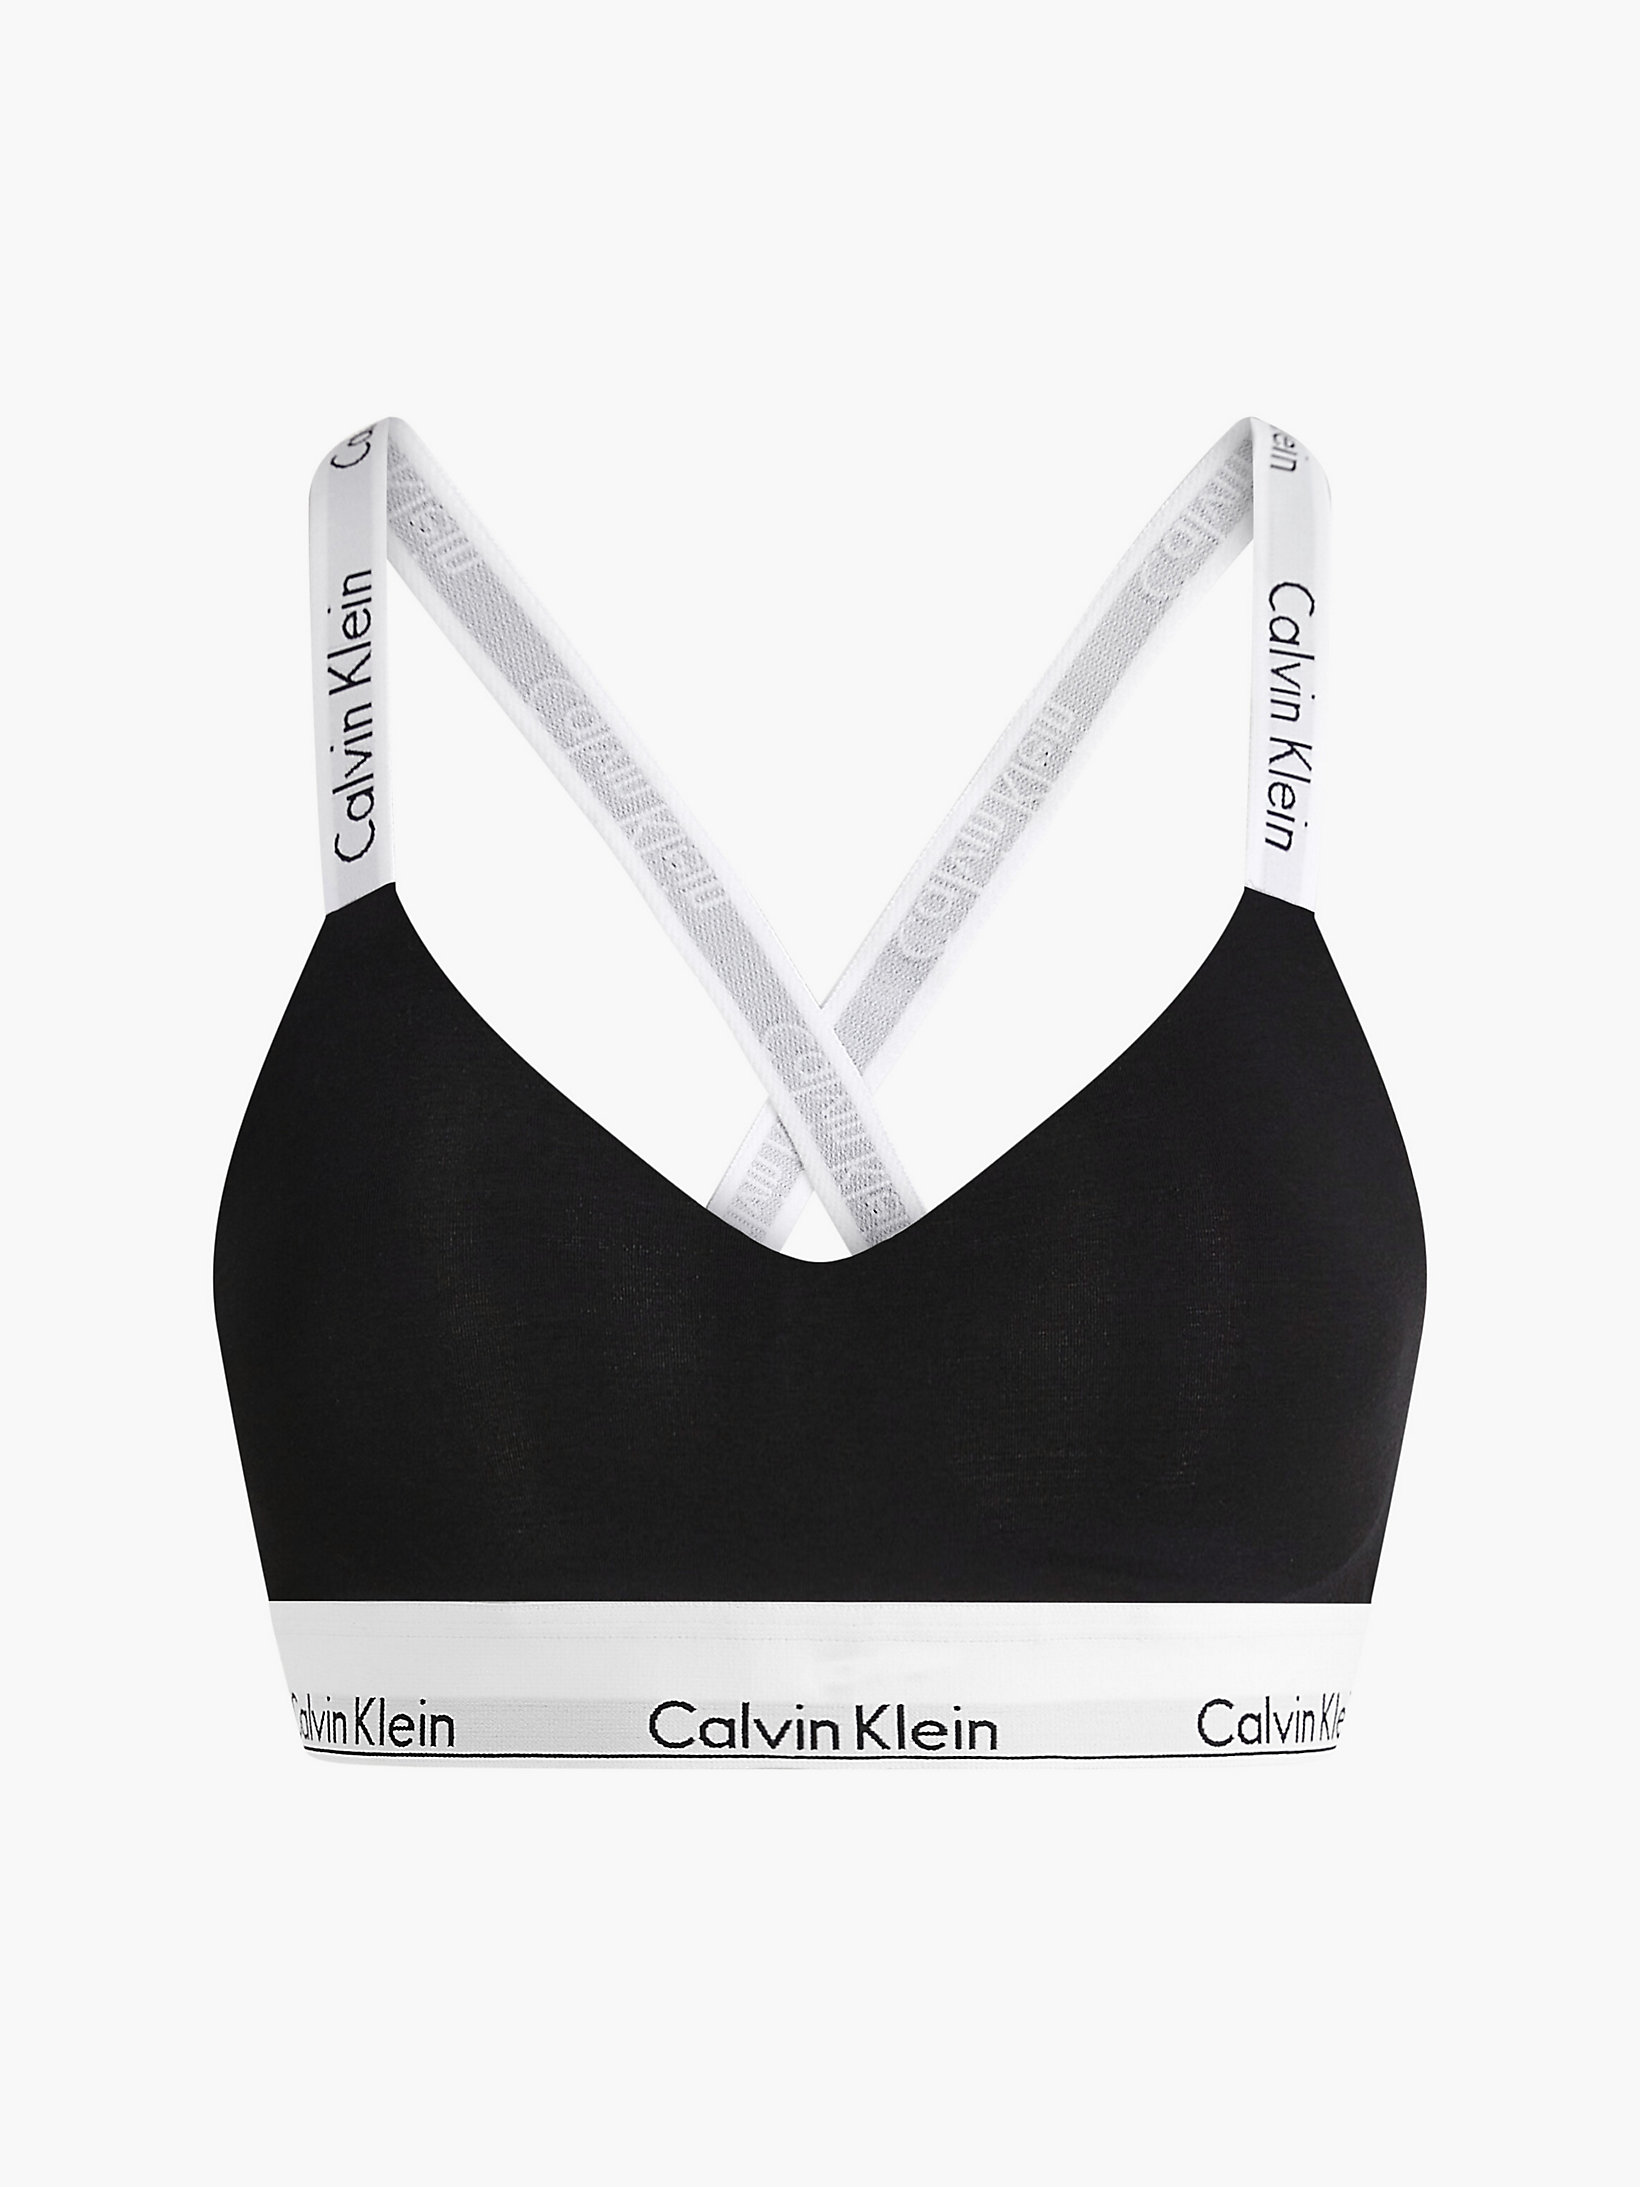 Brassière - Modern Cotton > Black > undefined donna > Calvin Klein